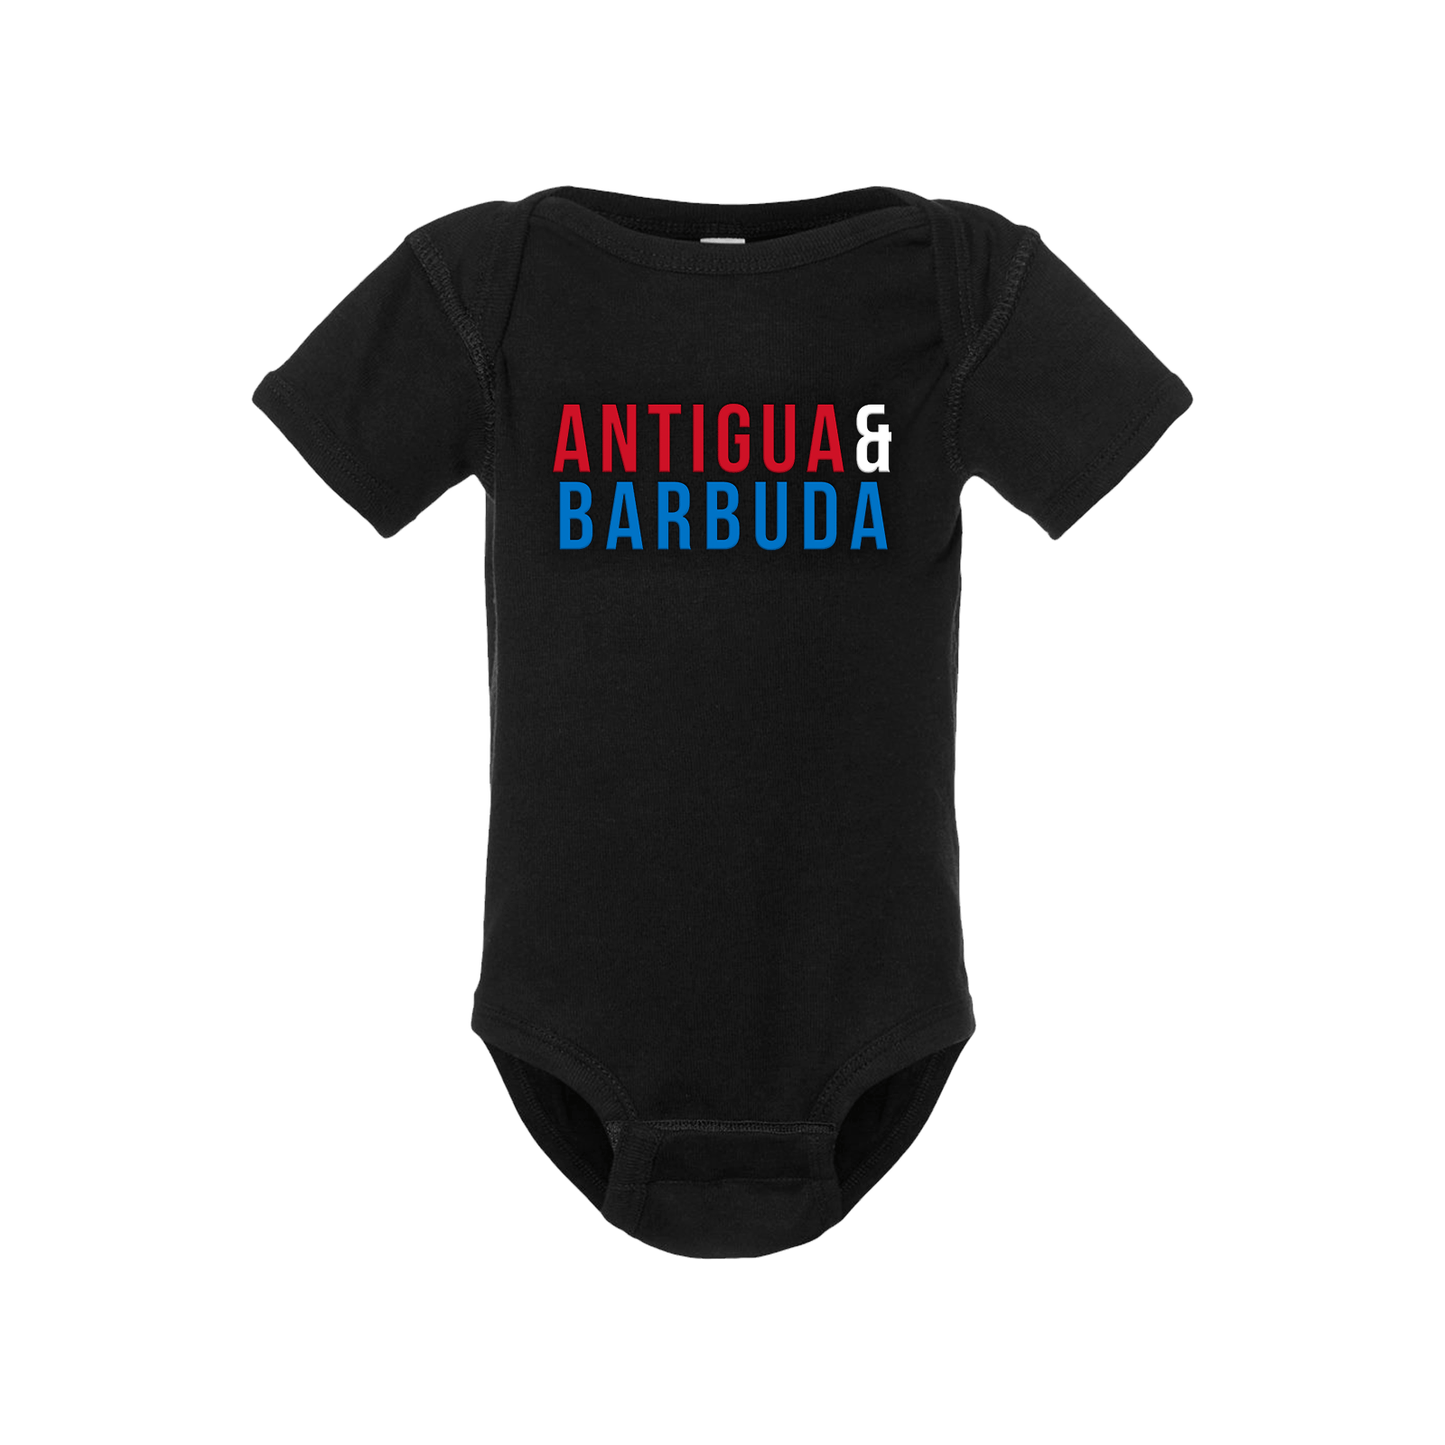 Antigua & Barbuda Short Sleeve Onesie - Babies & Toddlers